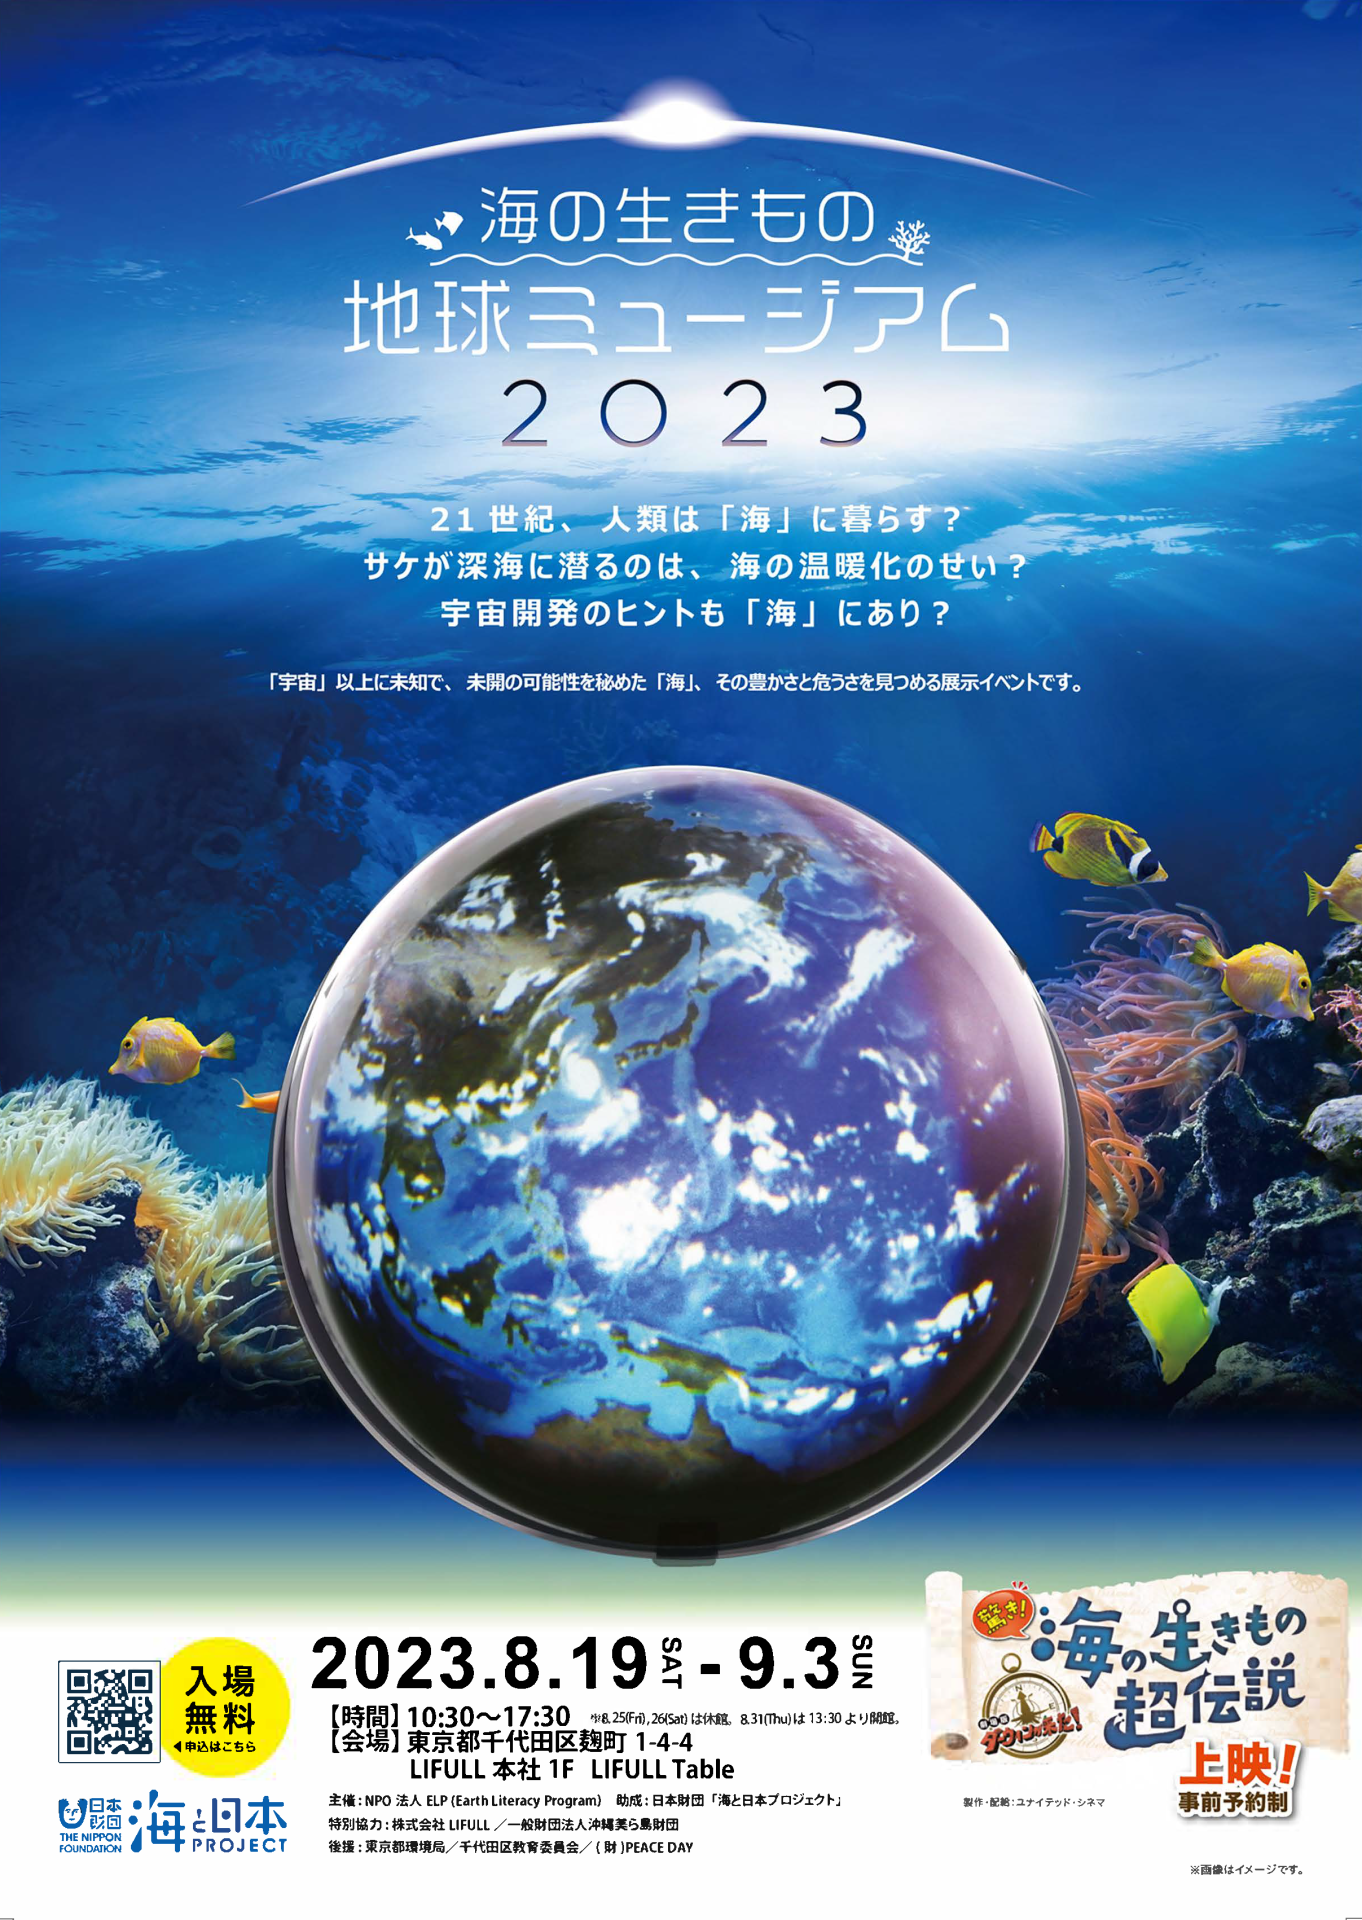 「海の生きもの地球ミュージアム2」が8月19日より開幕